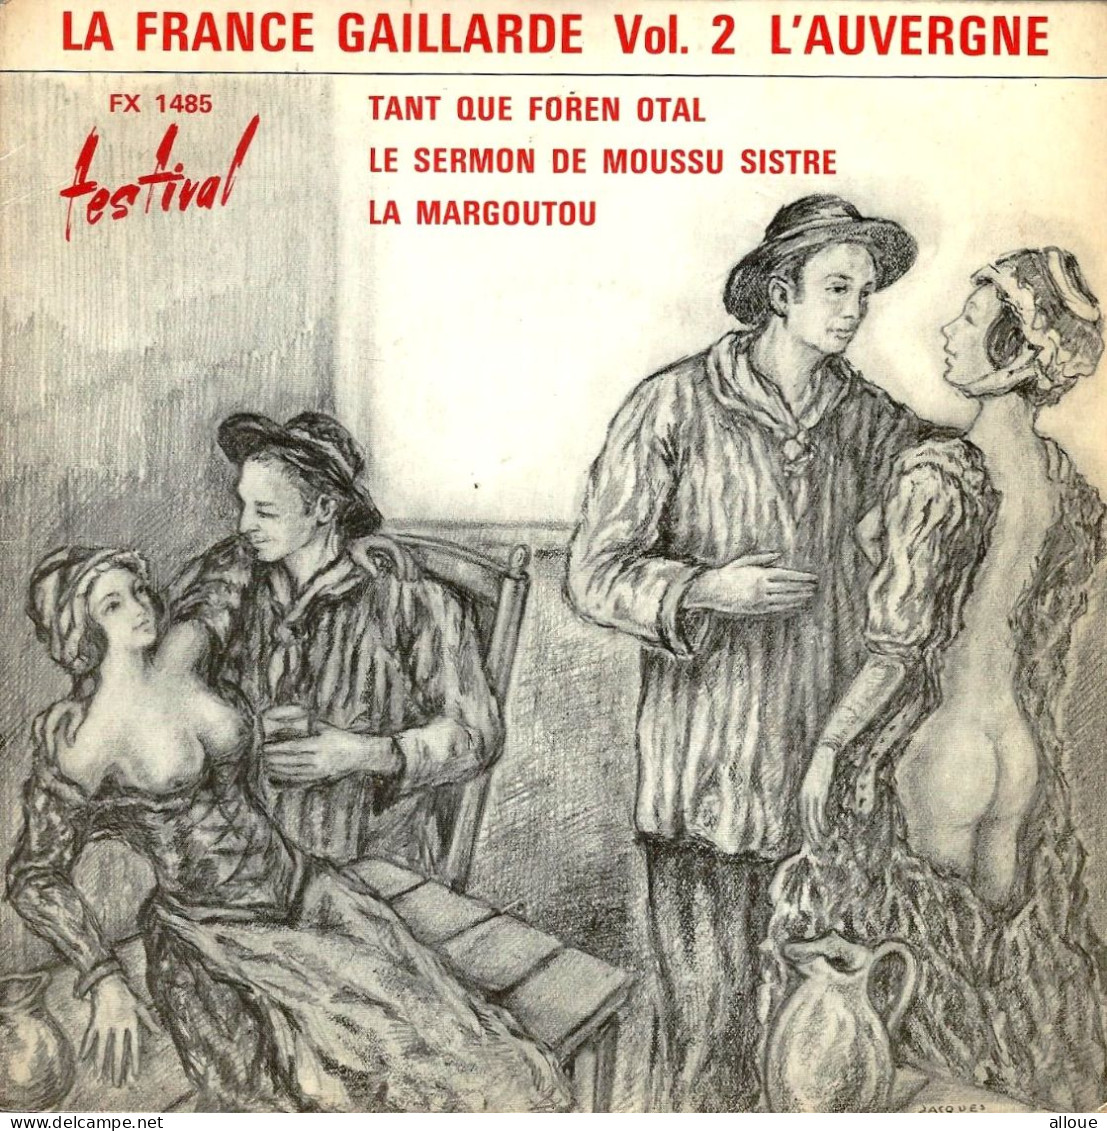 LES OISTOULETS CHANTENT ET DISENT - LA FRANCE GAILLARDE VOL 2 - FR EP -  TANT QUE FOREN OTAL + 2 - World Music